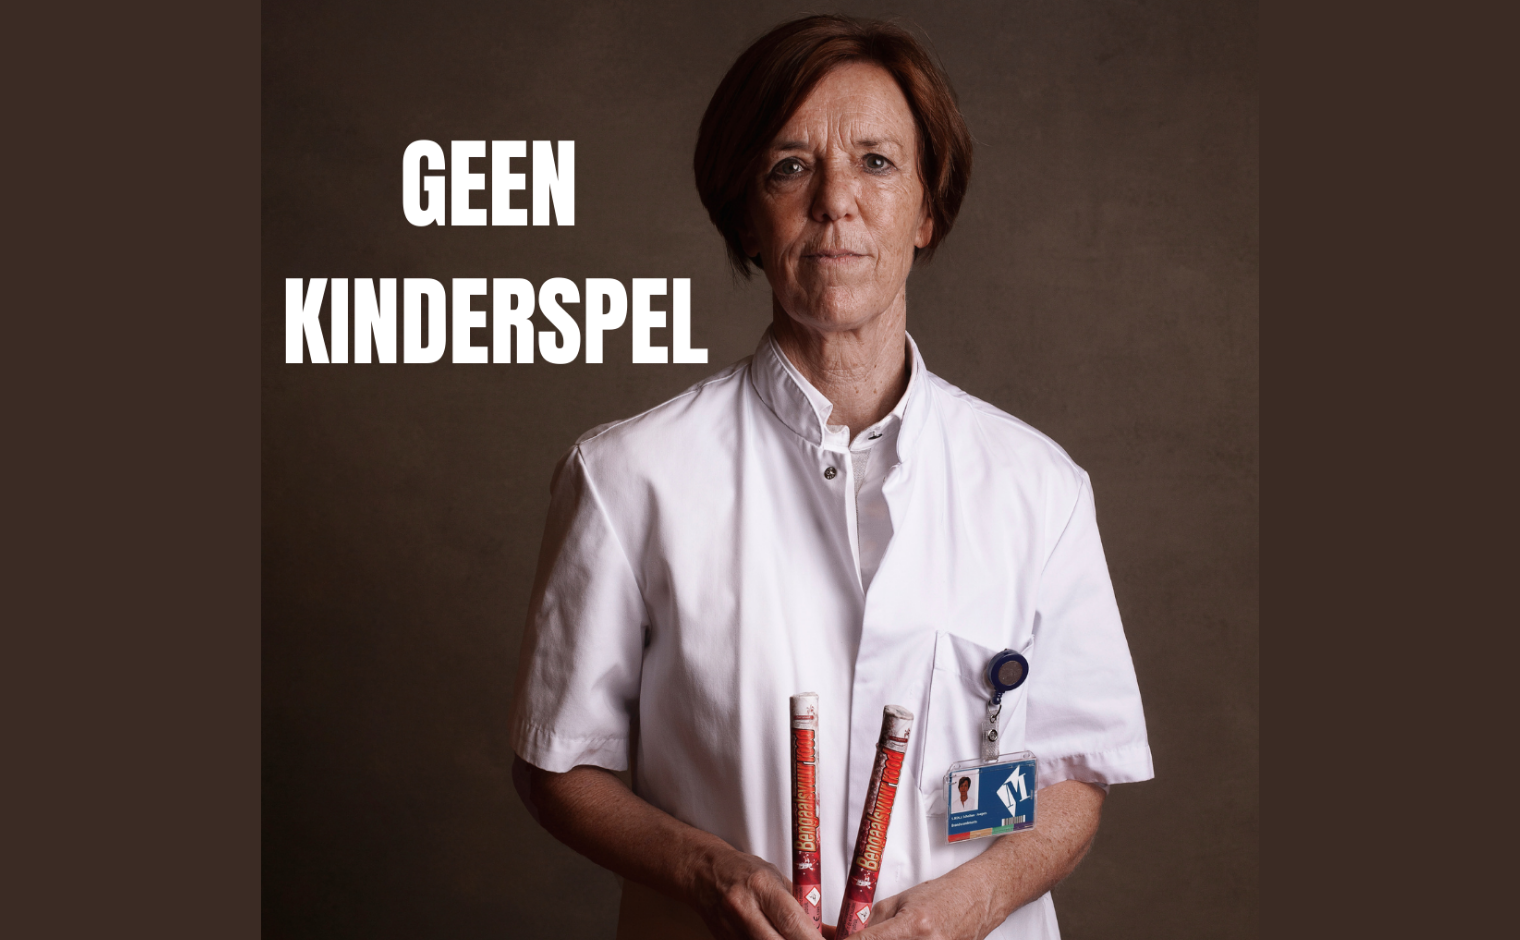 Sonja Scholten, brandwondenarts in het Martini Ziekenhuis, voor de campagne 'Geen Kinderspel' van de Nederlandse Brandwondenstichting.